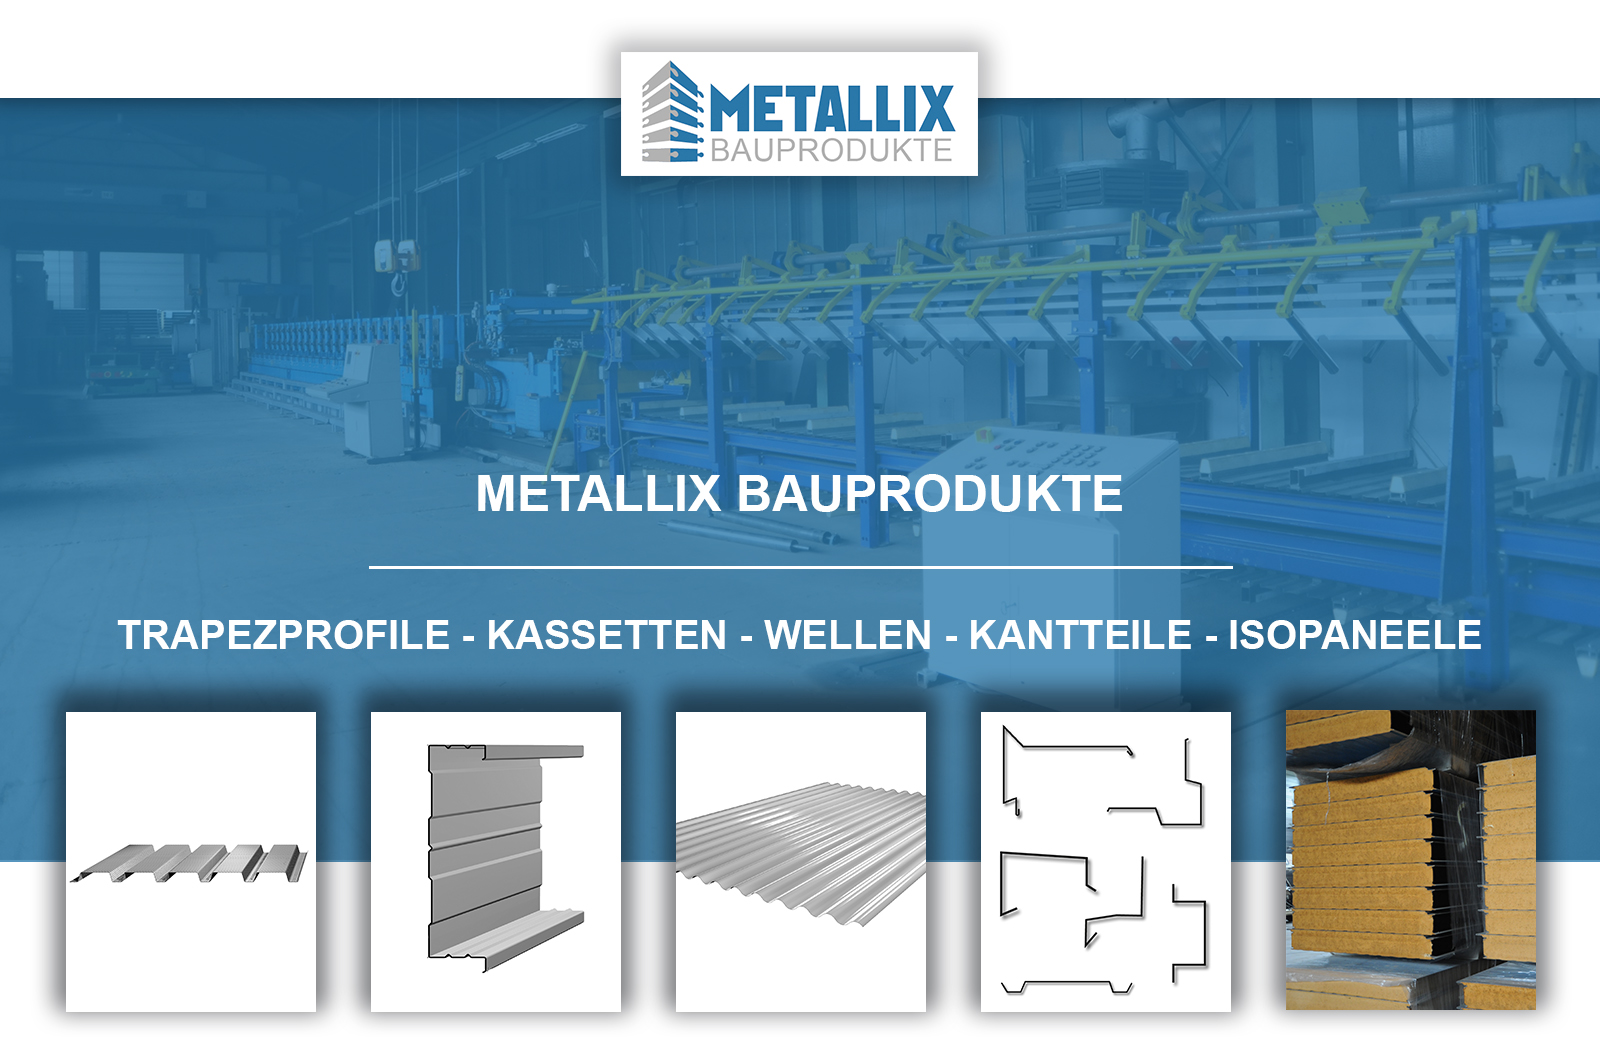 Metallix Bauprodukte Wellenblech